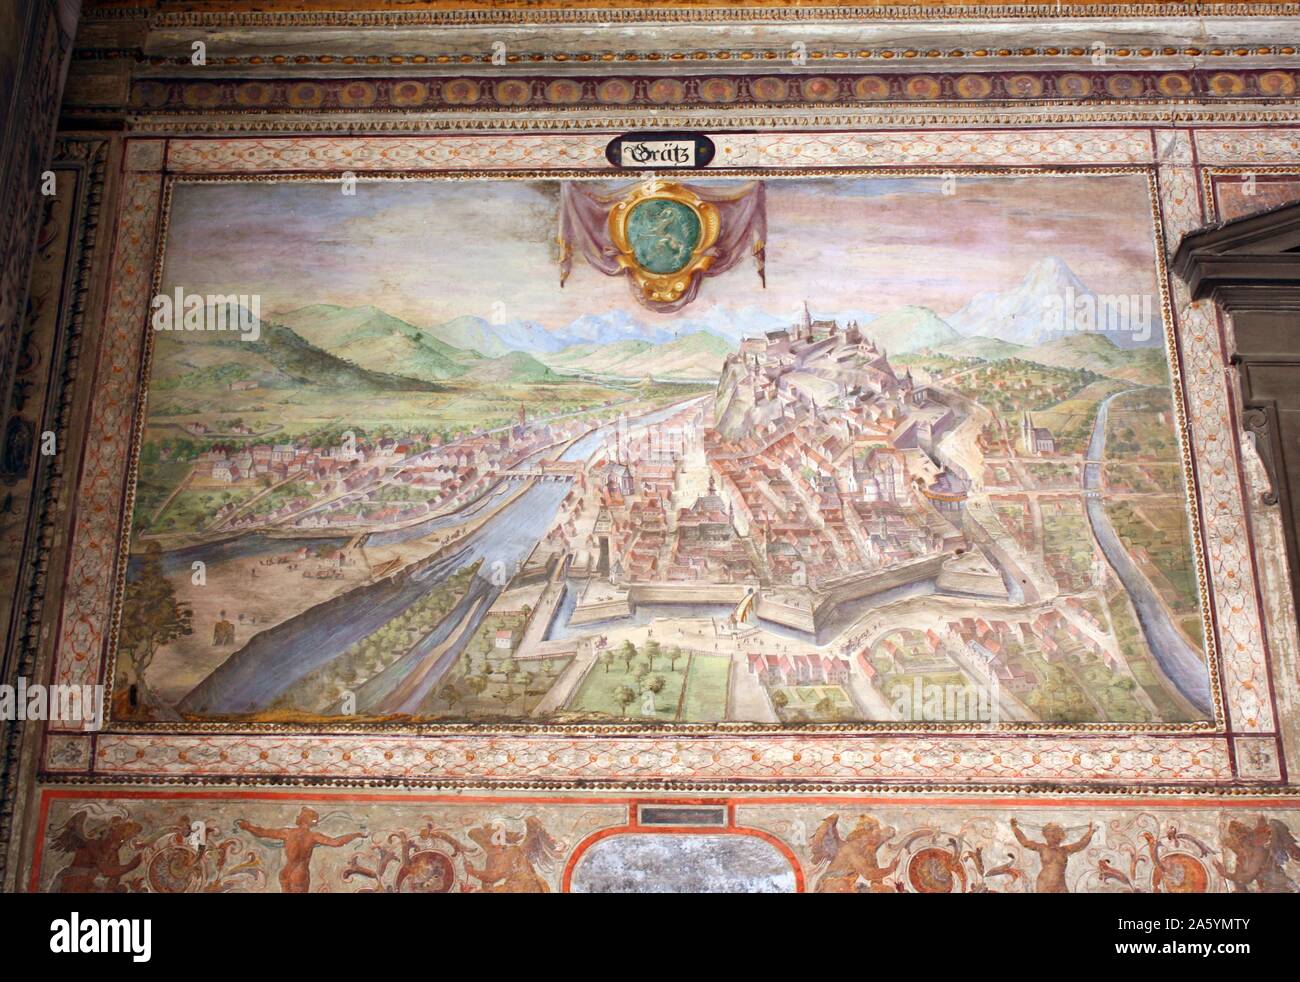 Interior Detail aus dem Palazzo Vecchio, Florenz, Italien. Eine massive, romanische Festung - Palast wurde vom Architekten Arnolfo di Cambio. Intern werden die ersten Hof wurde im Jahre 1453 von Michelozzo entworfen. In den Stichkappen und rund um den Hof sind Wappen der Kirche und Stadt Gilden. In der Mitte, der Porphyr Brunnen wird von Battista del Tadda. Das Bild zeigt die bemalte Wand detail. Stockfoto